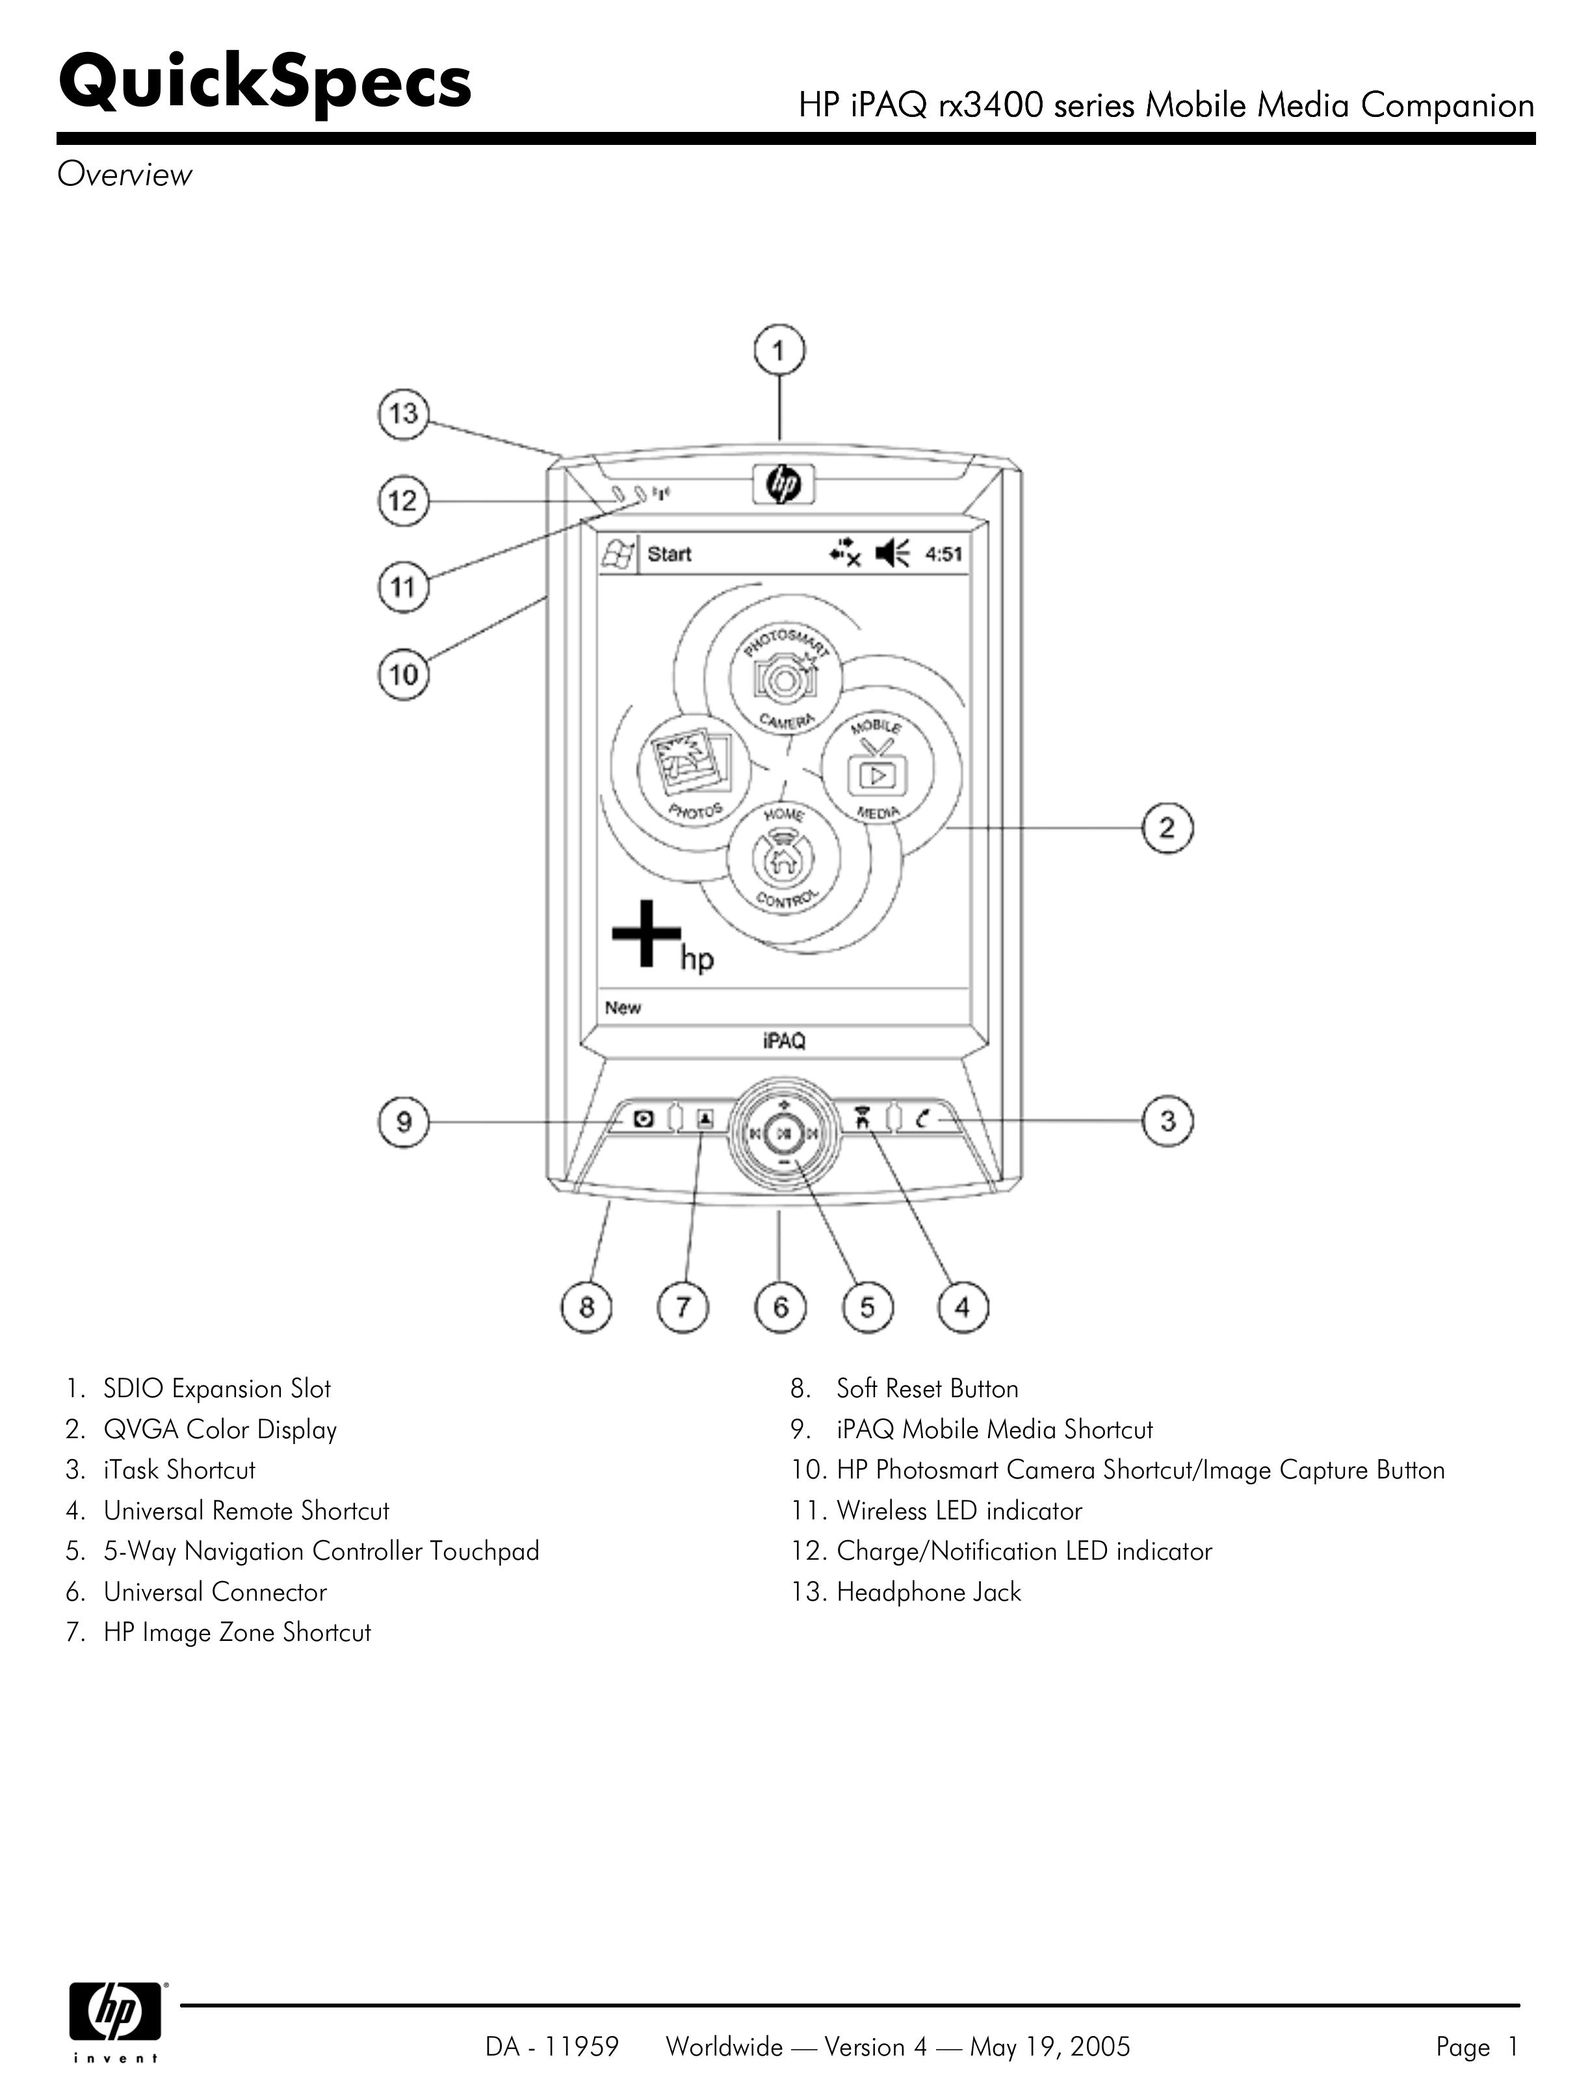 HP (Hewlett-Packard) rx3400 MP3 Player User Manual